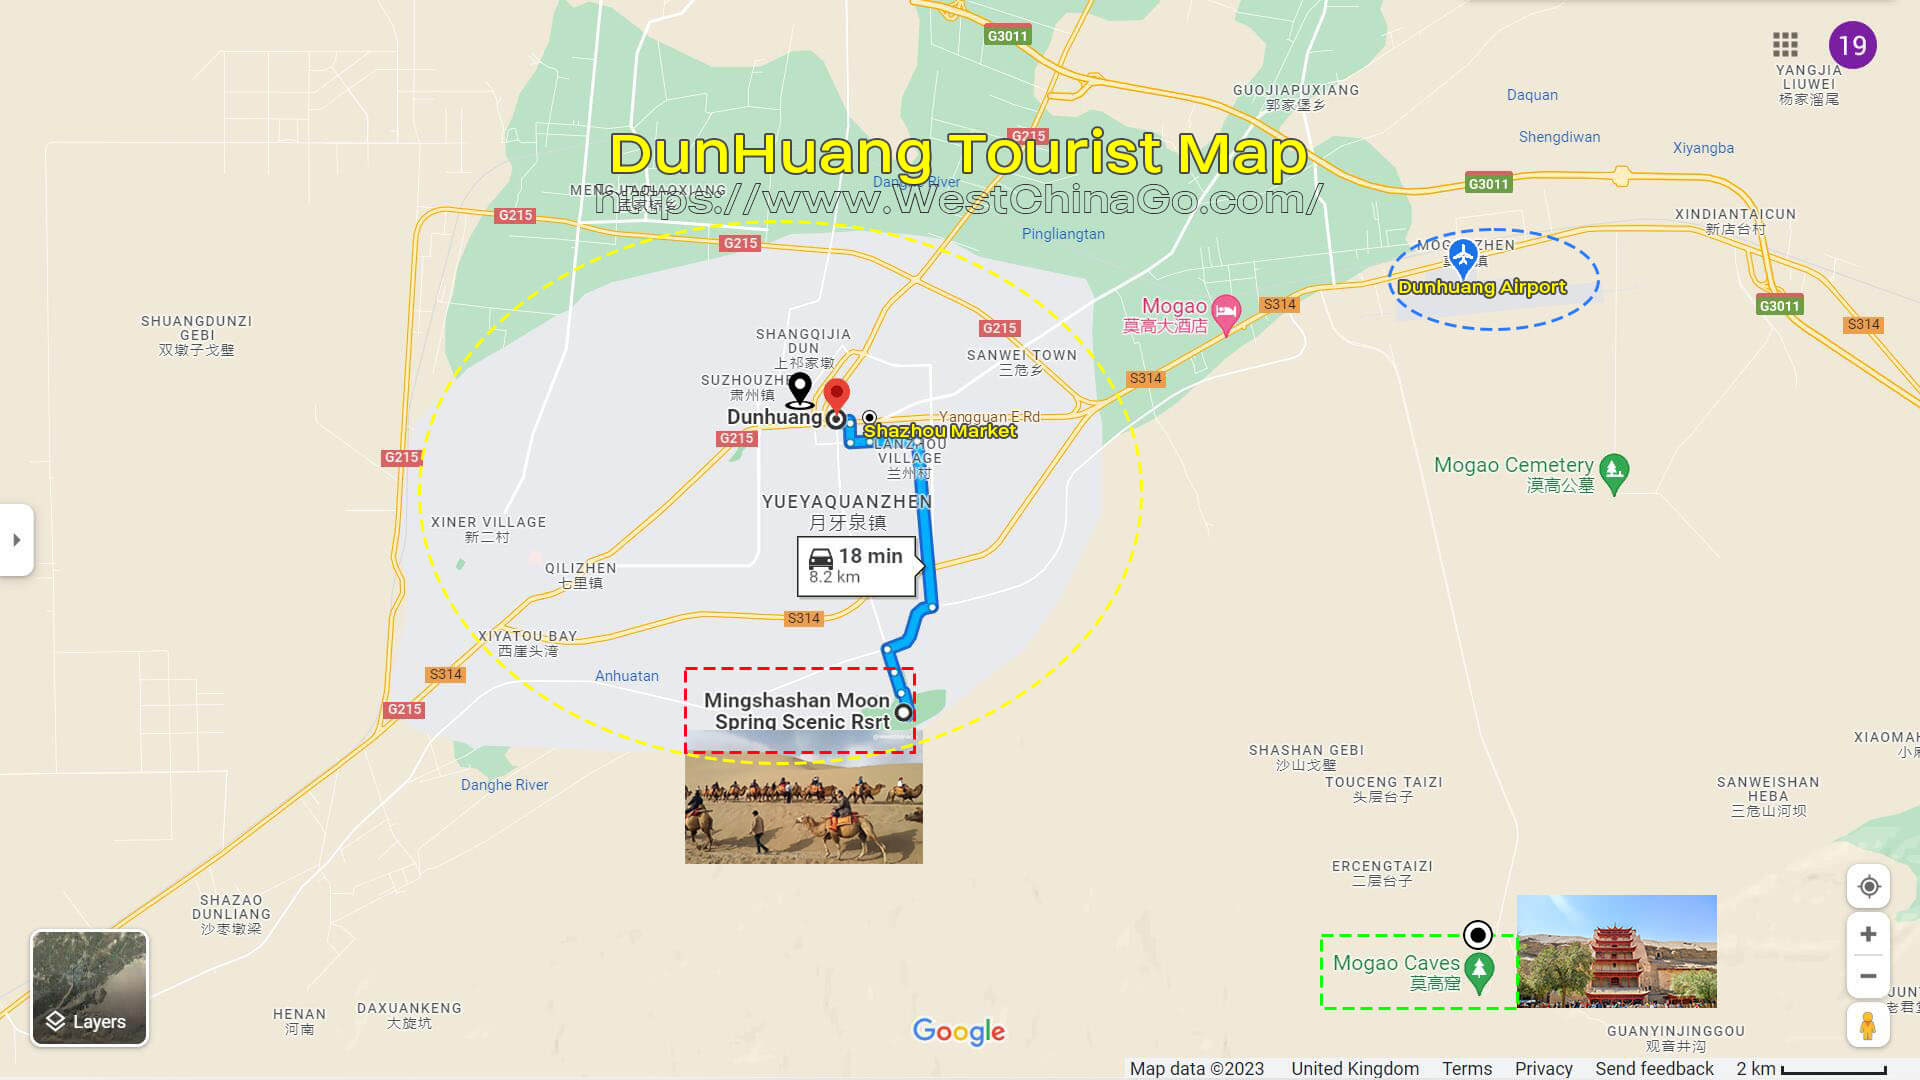 GanSu Tourist Map